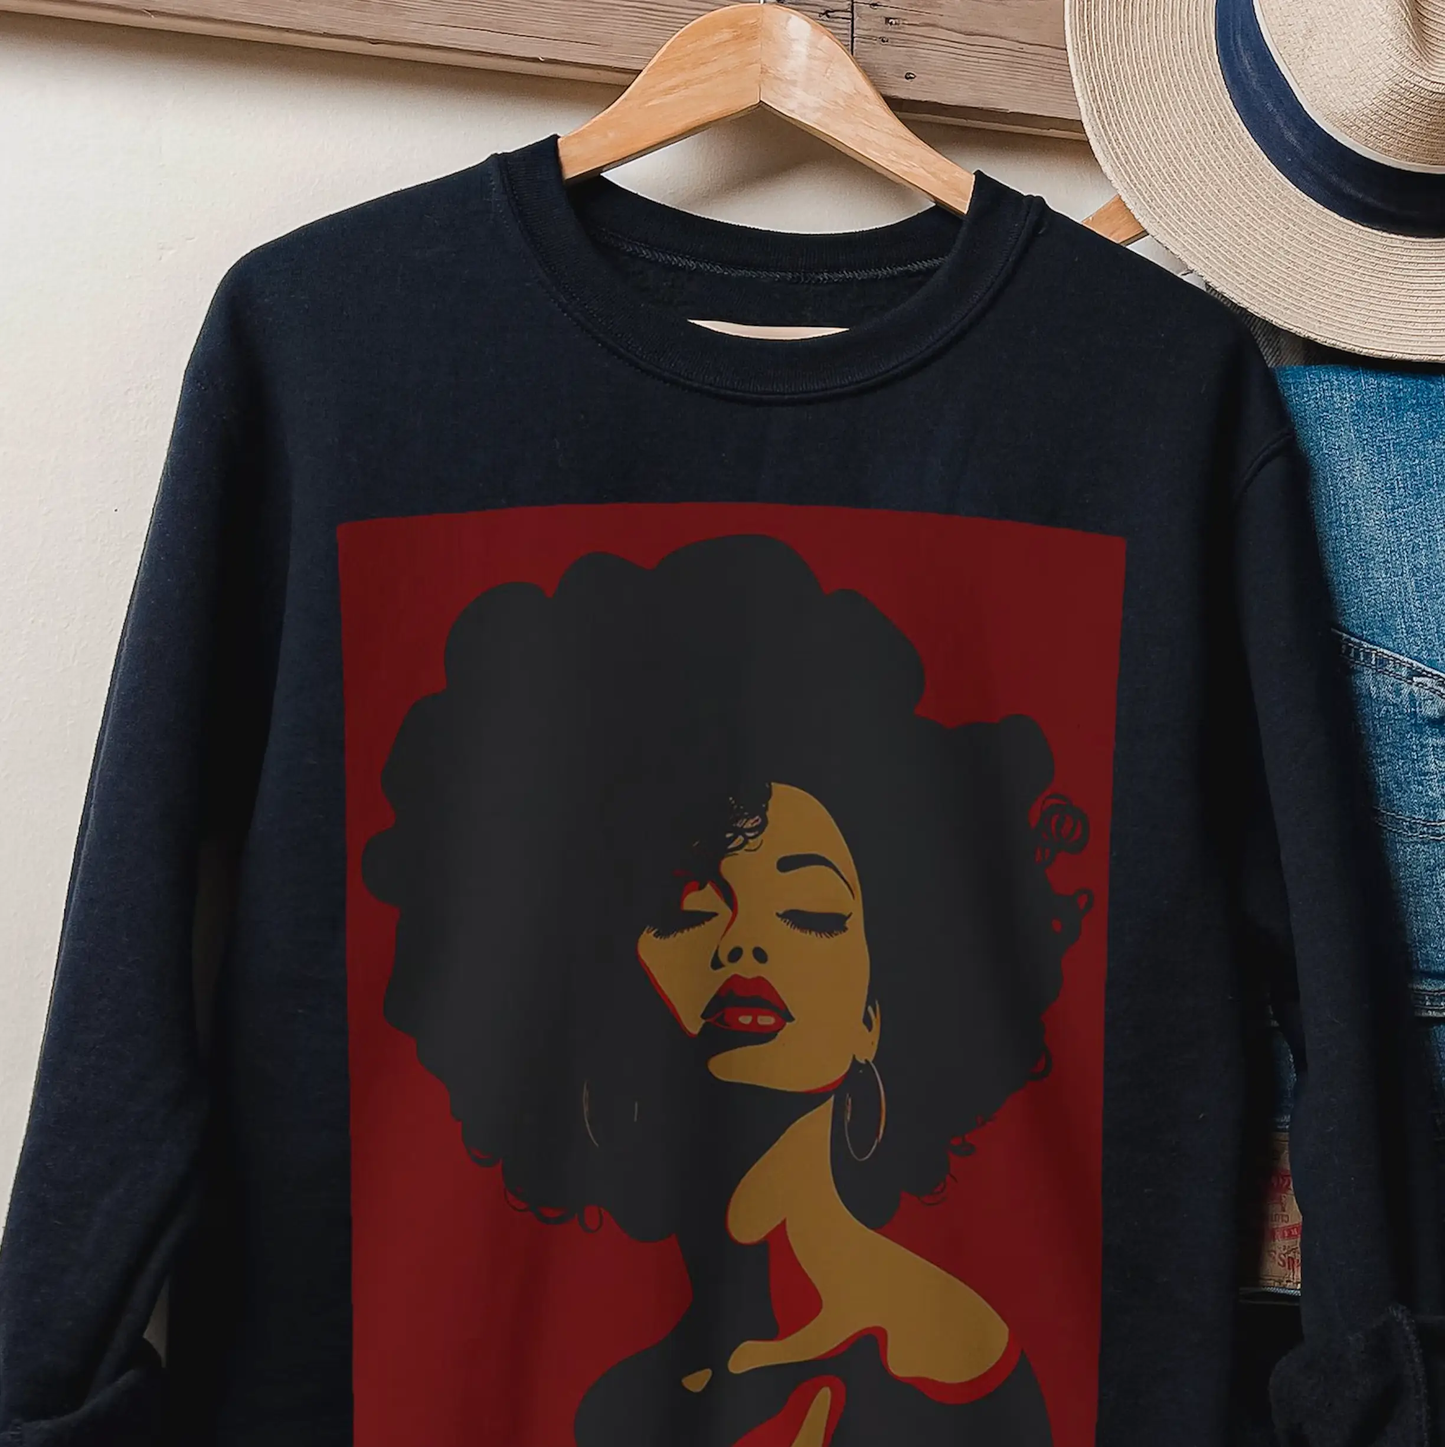 Afro Lady Sweatshirt